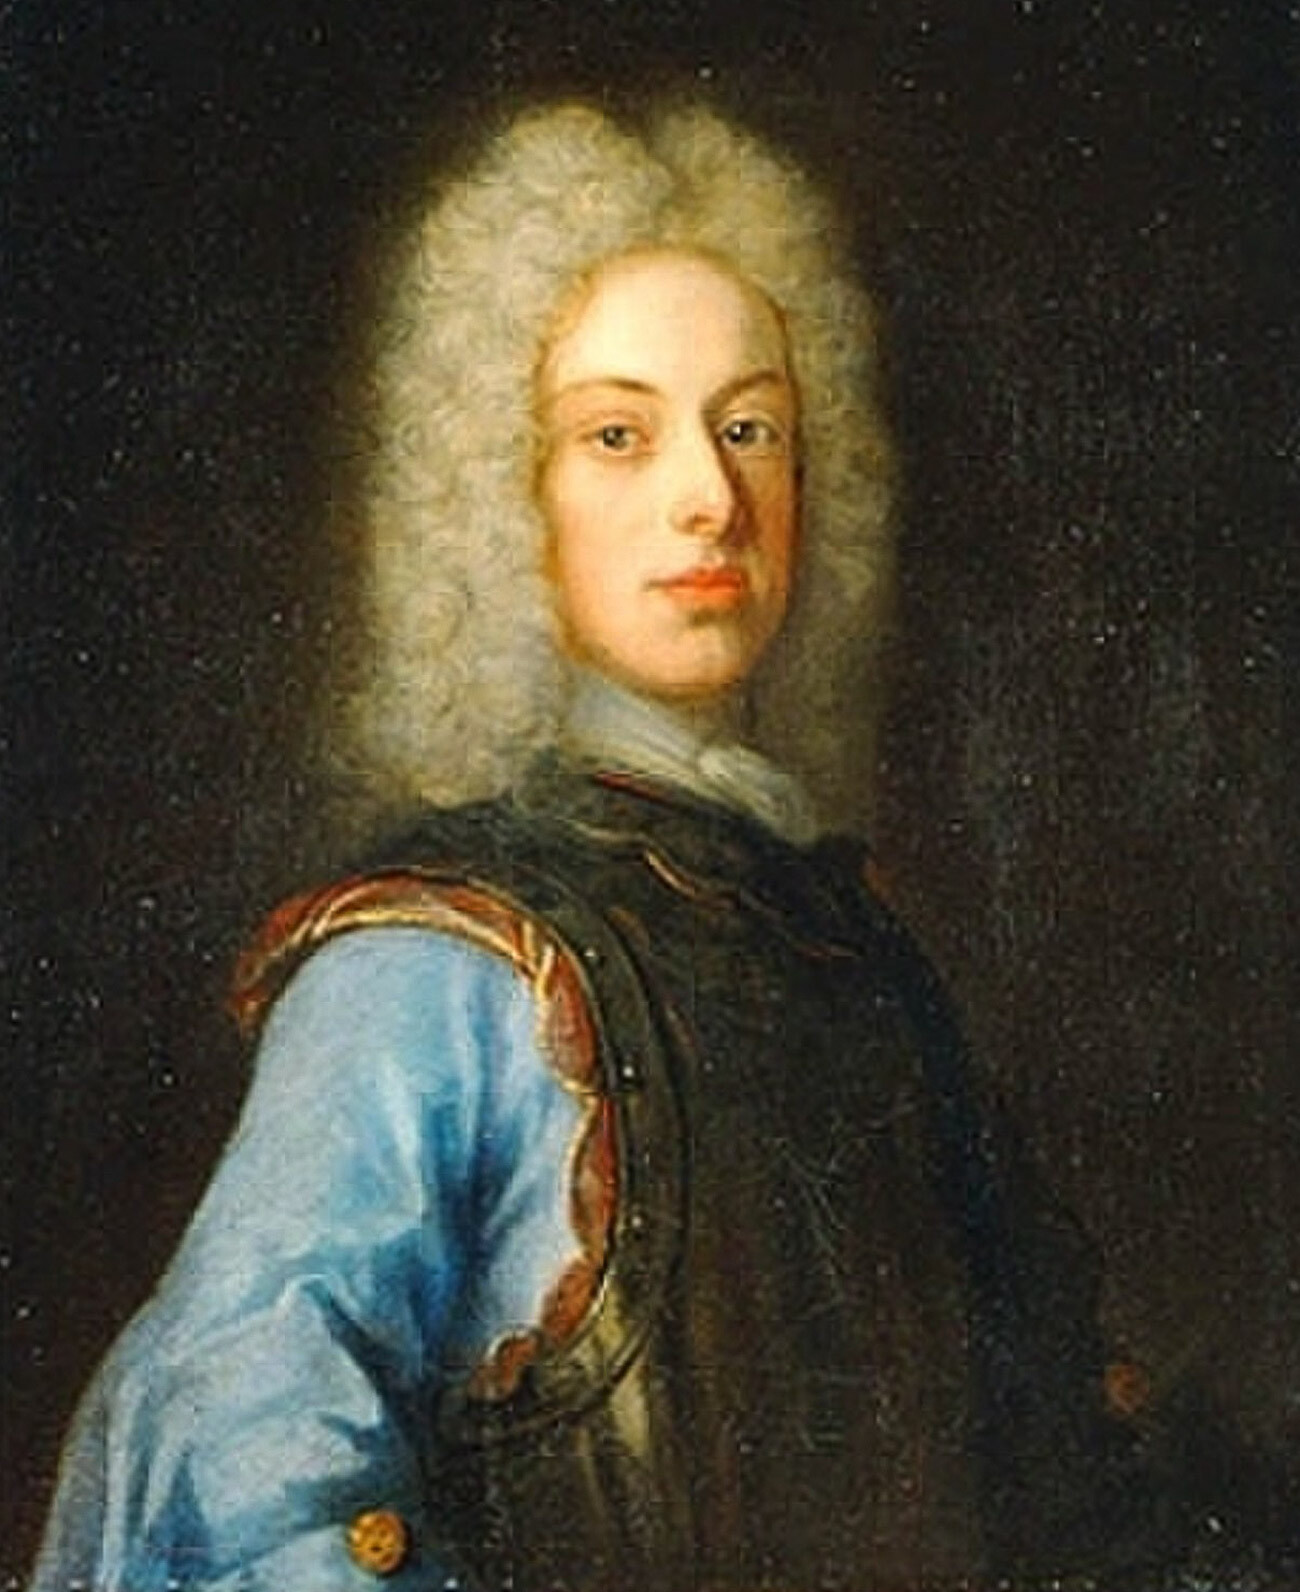 Švedski princ Karl Friedrich

